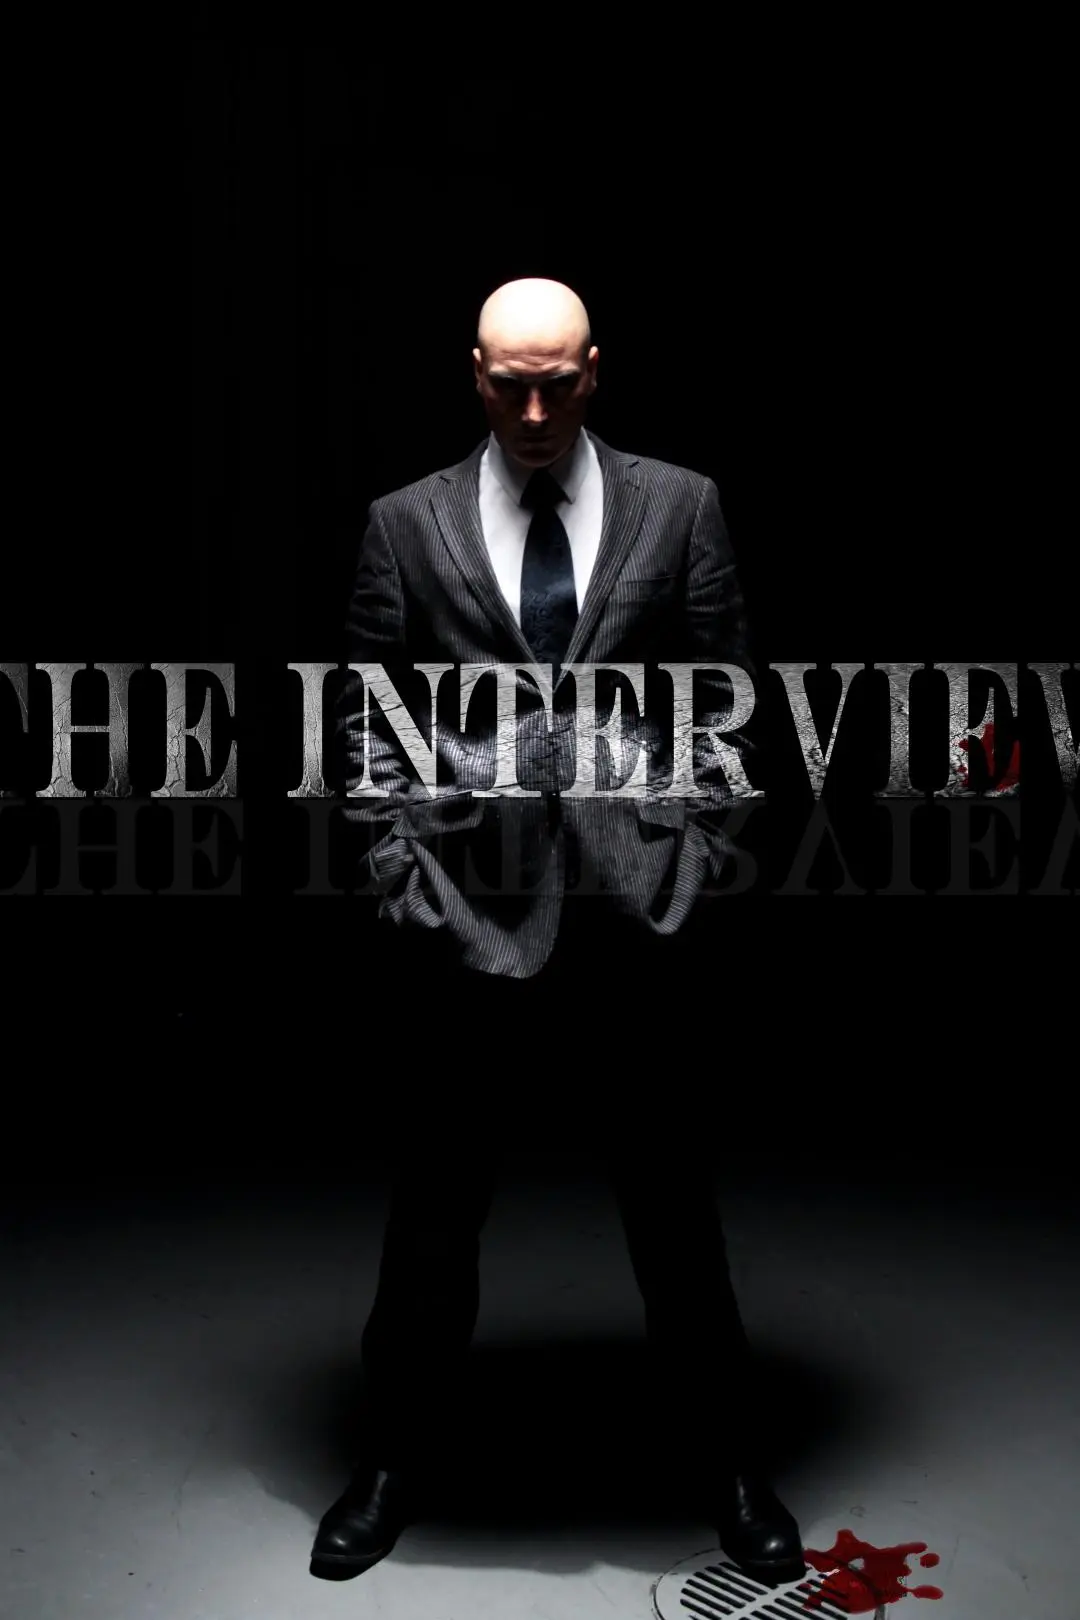 The Interview_peliplat